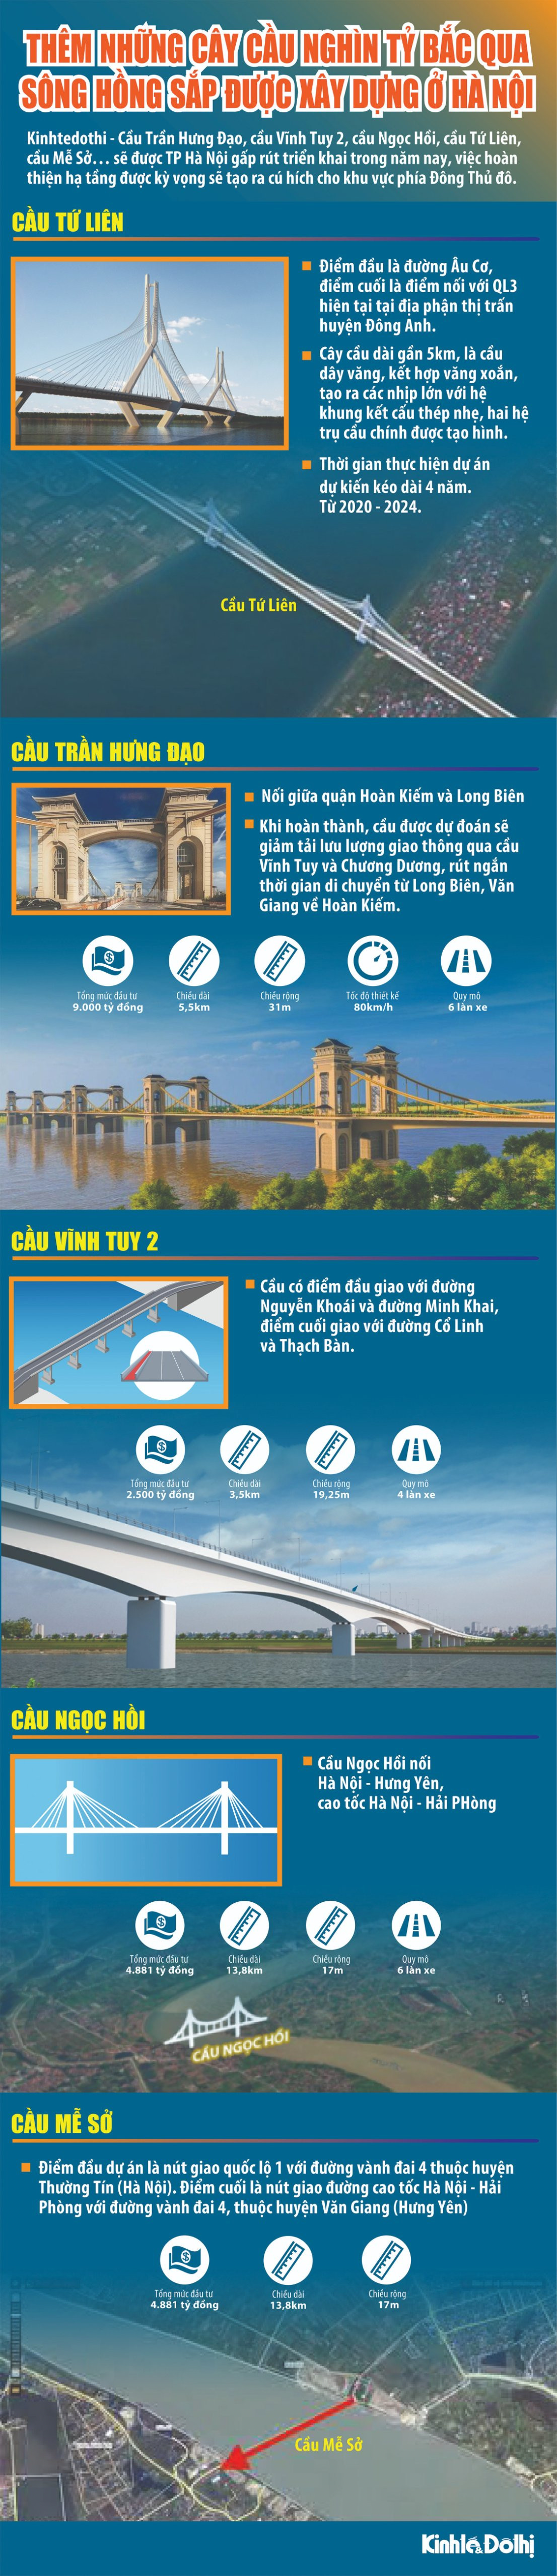 (Infographic) Những cây cầu nghìn tỷ bắc qua sông Hồng sắp được xây dựng ở Hà Nội